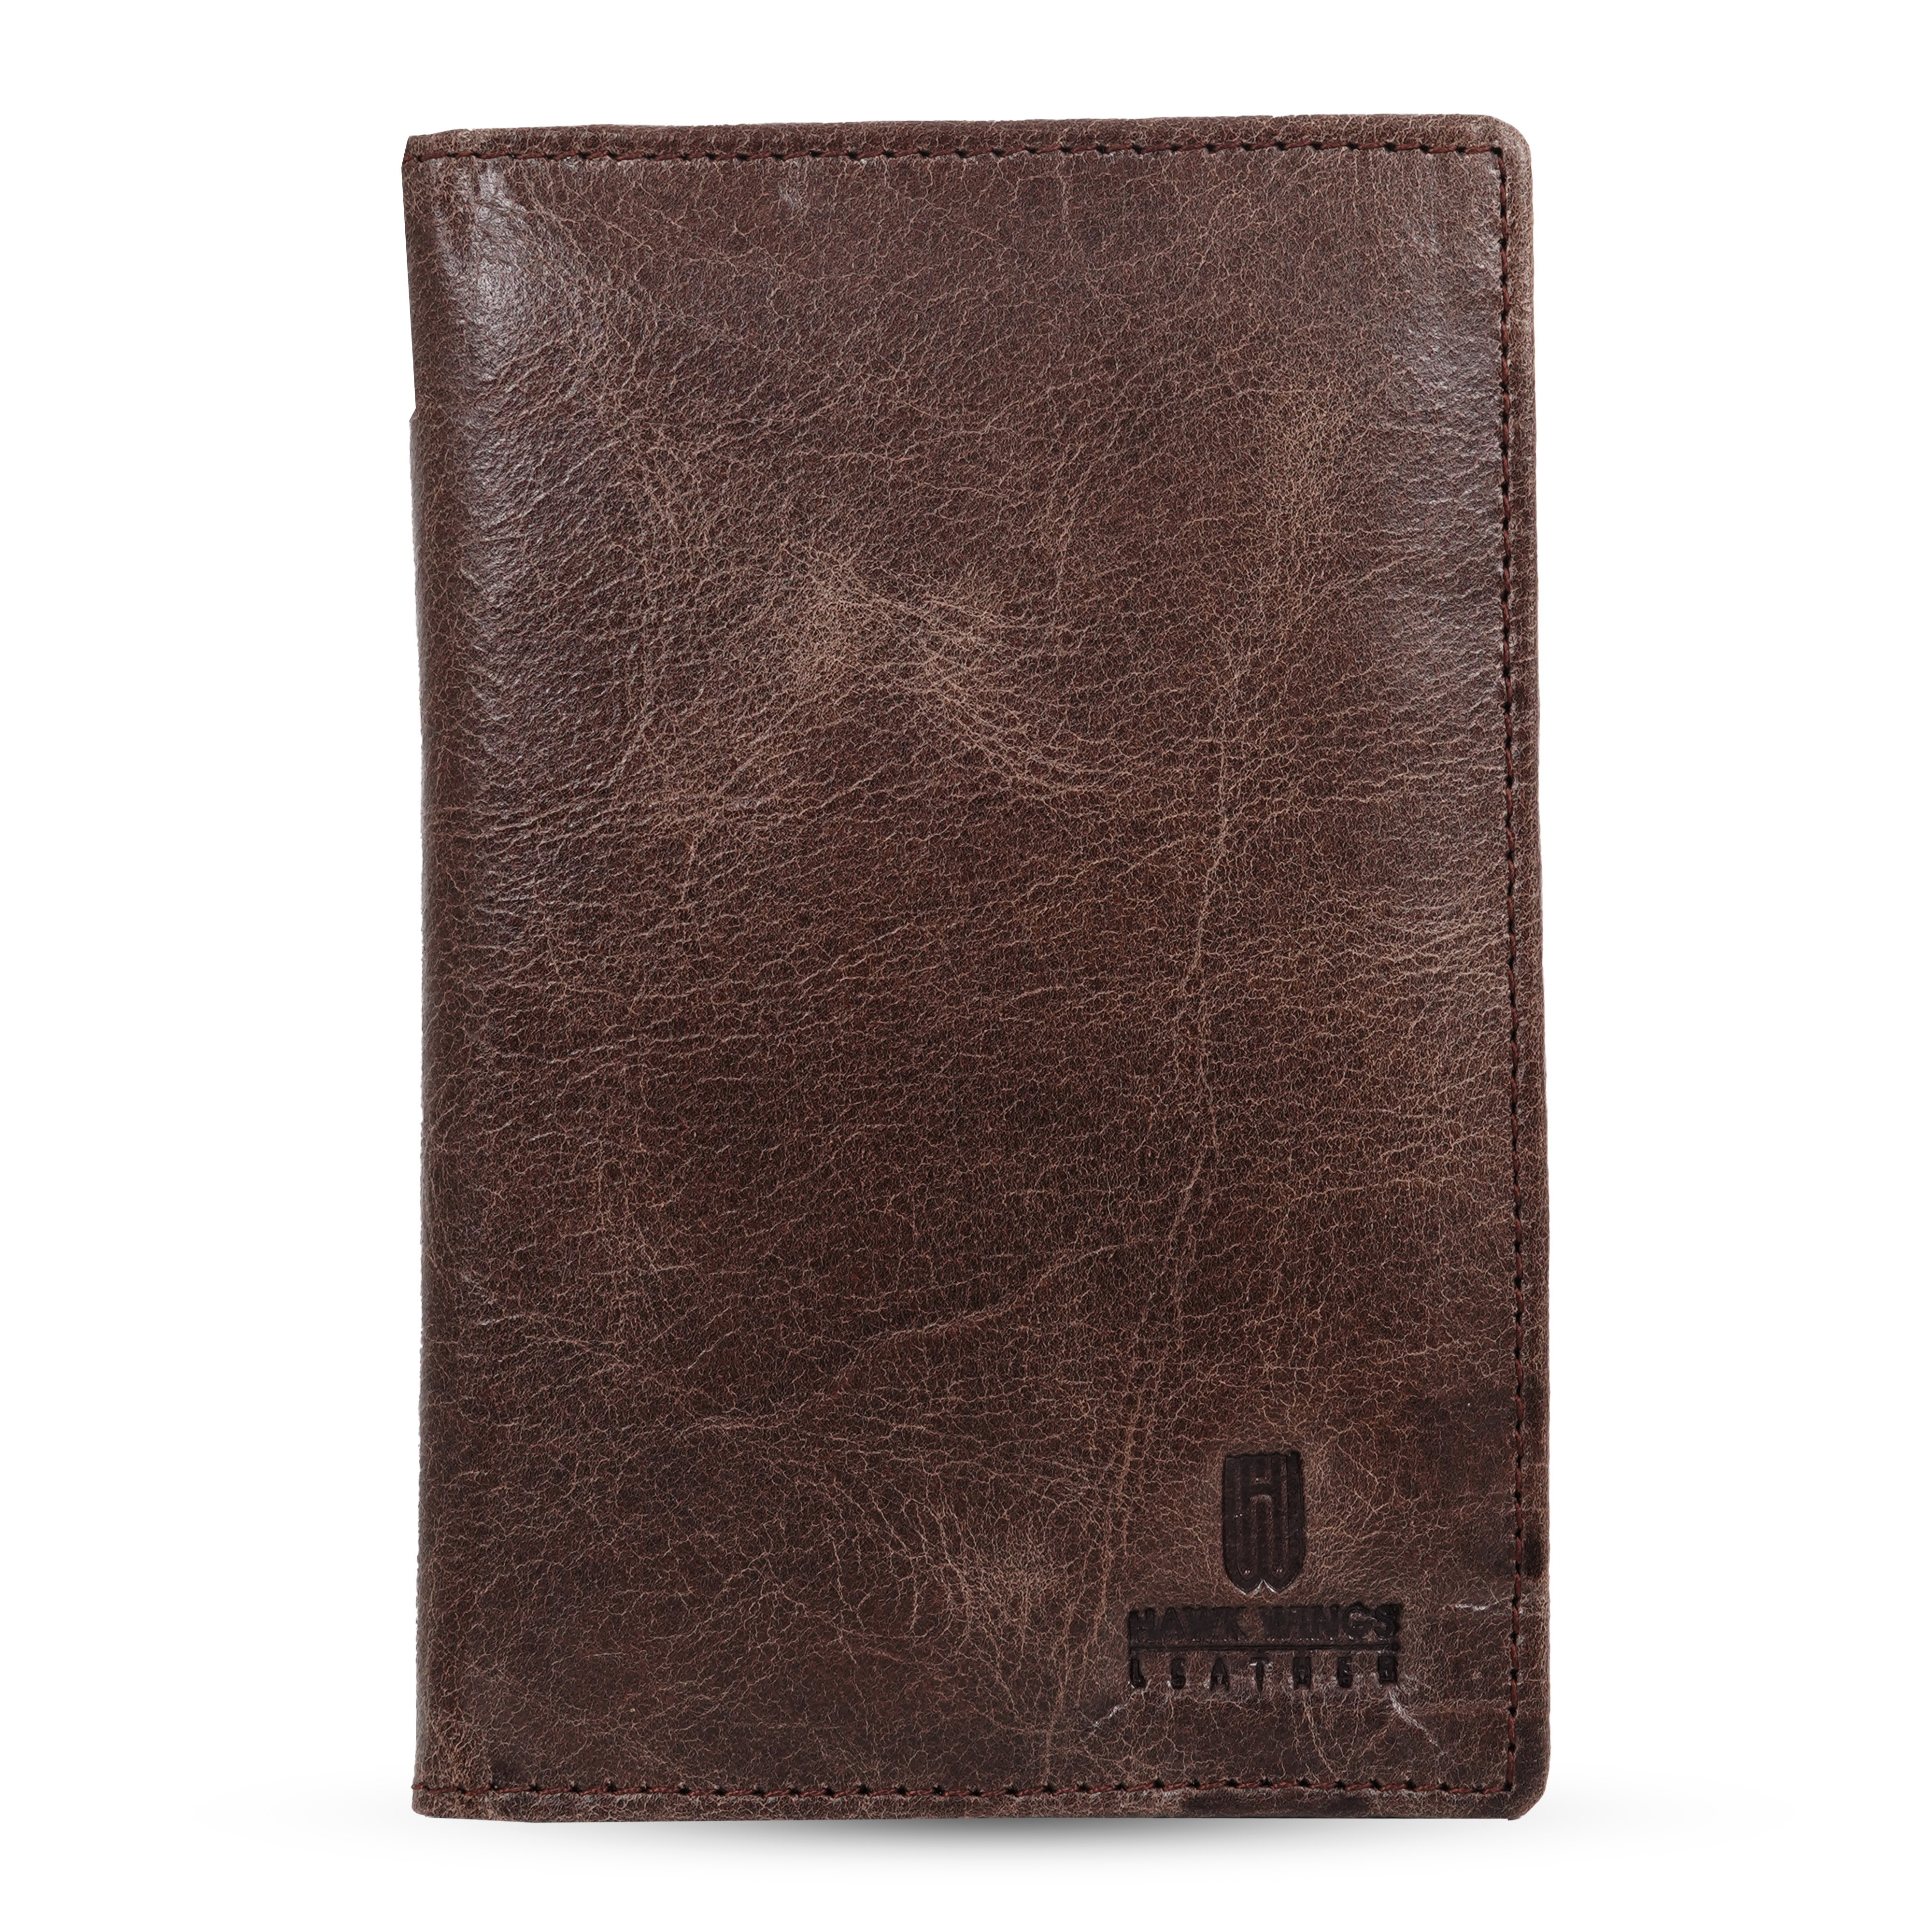 Genuine Leather  Card Holder||Travel Passport Holder||Travel Document Holder||Passport Cover For Men&Women ( BROWN)-asset-600